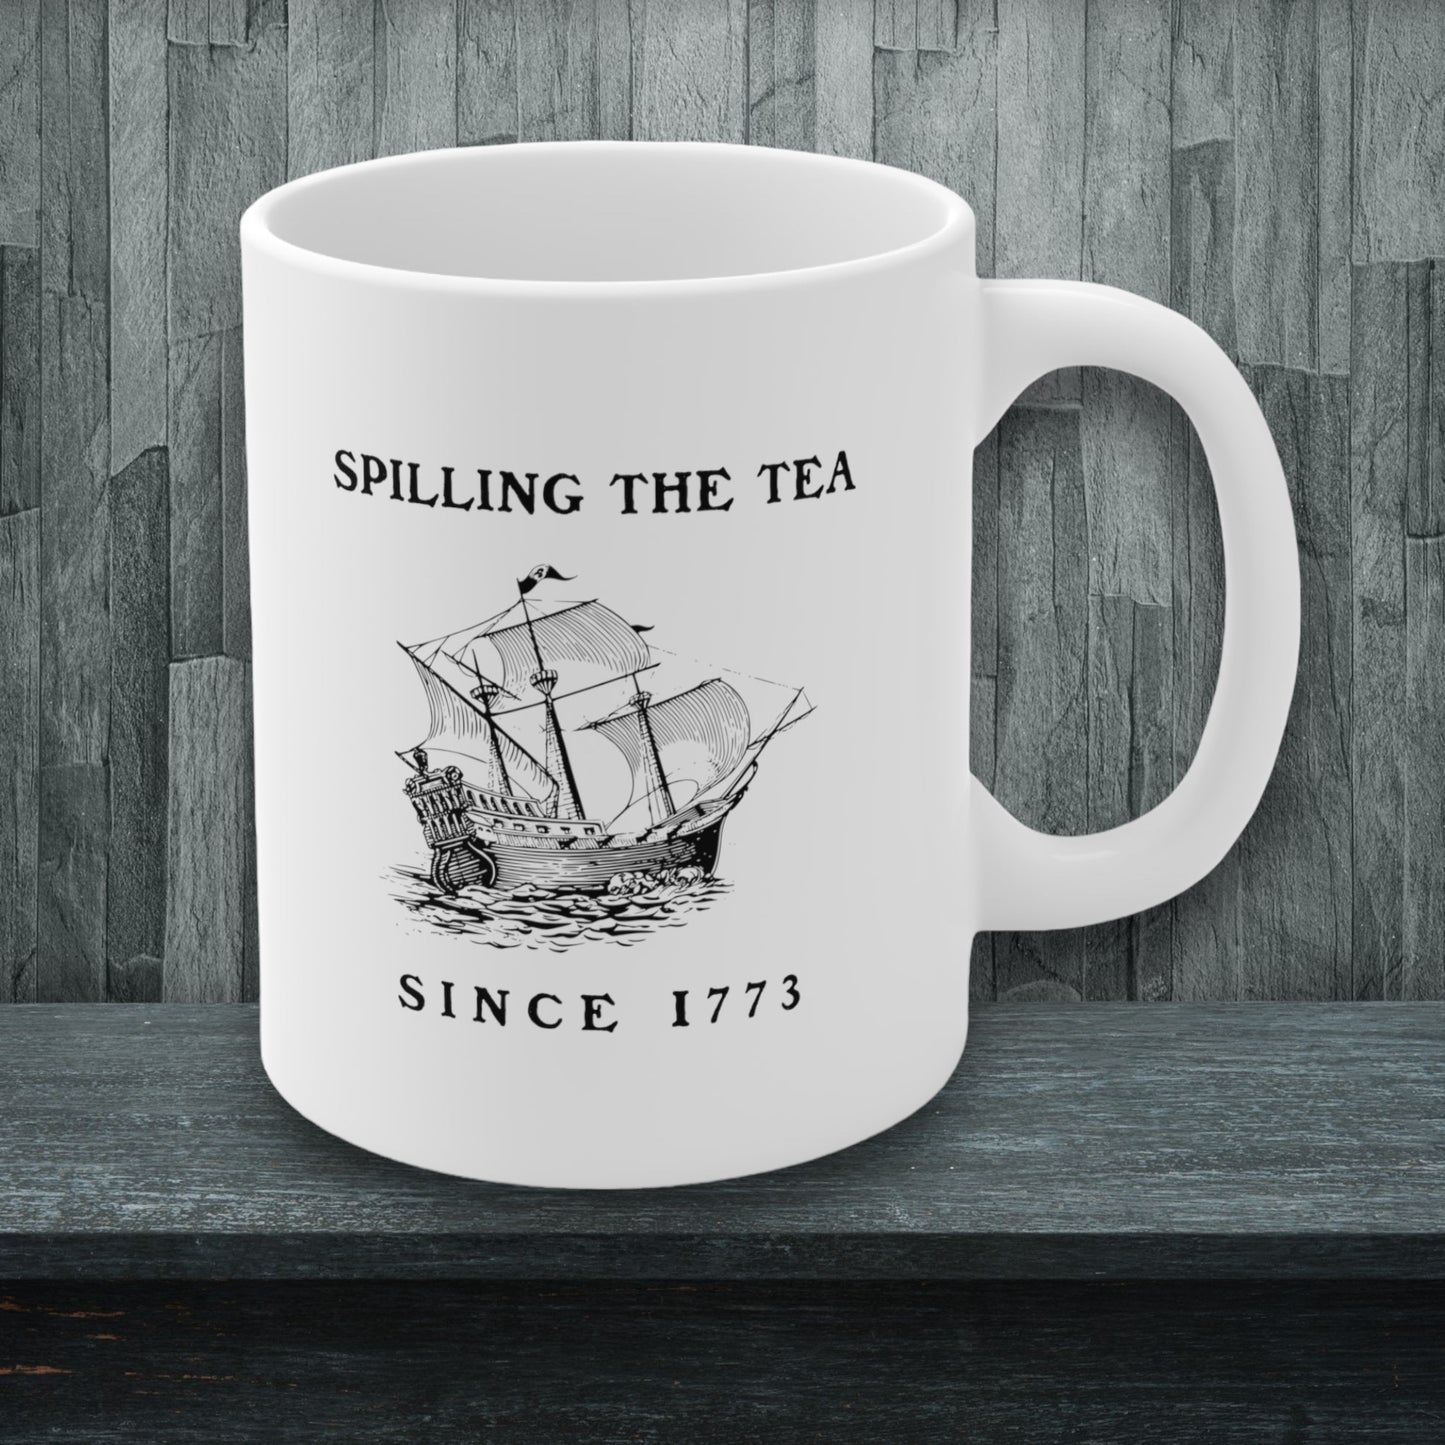 "Spilling The Tea Since 1773" historical humor coffee mug